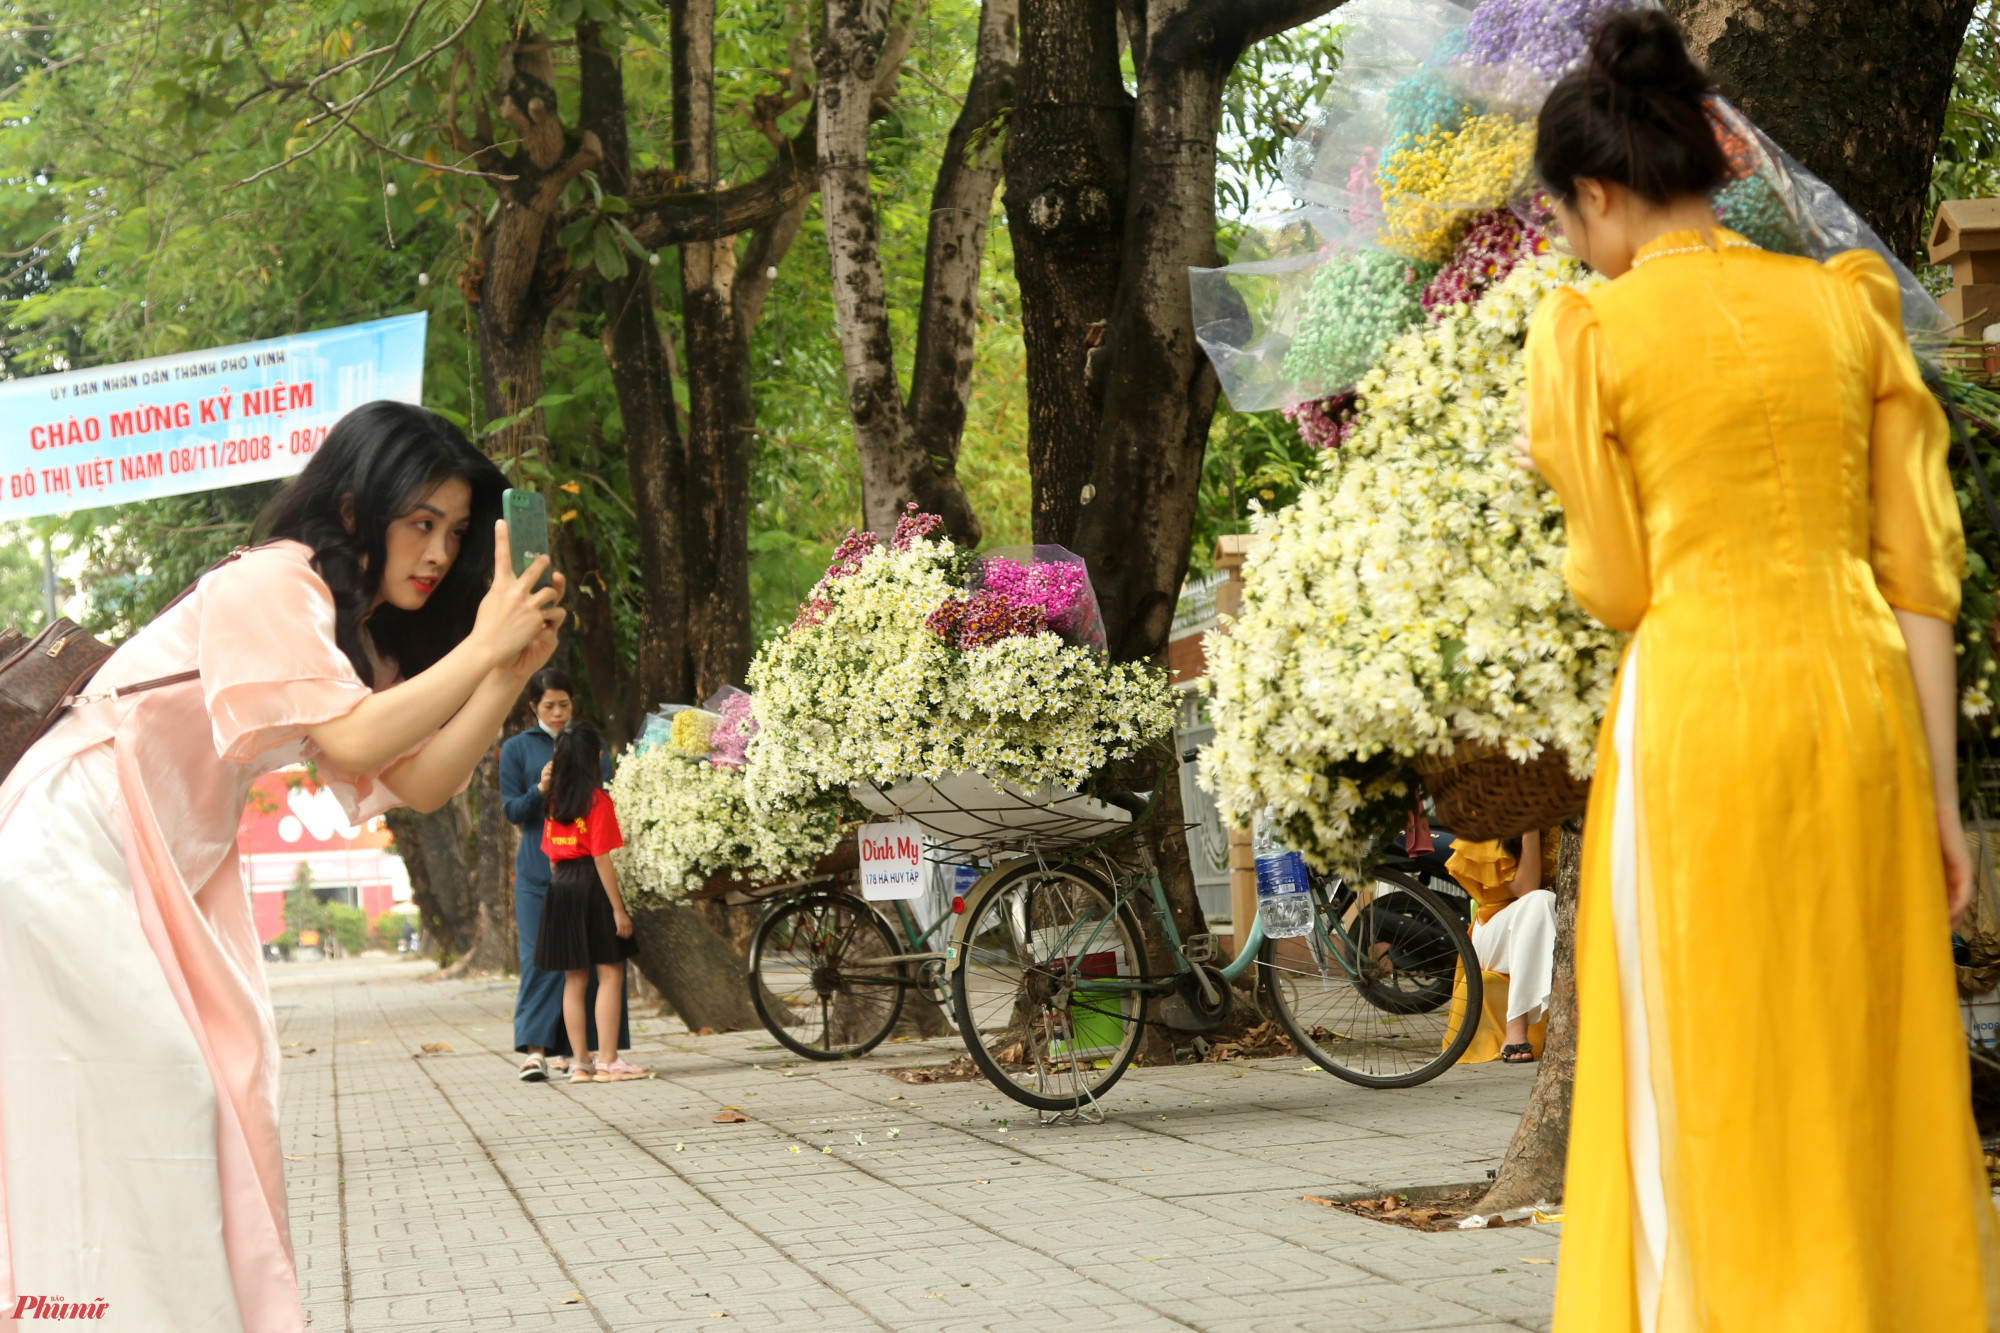 Nhiều ngày qua, dọc tuyến đường Lê Mao, Hồ Tùng Mậu (thành phố Vinh, Nghệ An) xuất hiện nhiều người bán hoa dạo bằng xe đạp. Những chiếc xe đạp cũ kỹ, được chất đầy các loại hoa đủ sắc màu đỗ trên vỉa hè thu hút ánh nhìn của nhiều người đi đường.